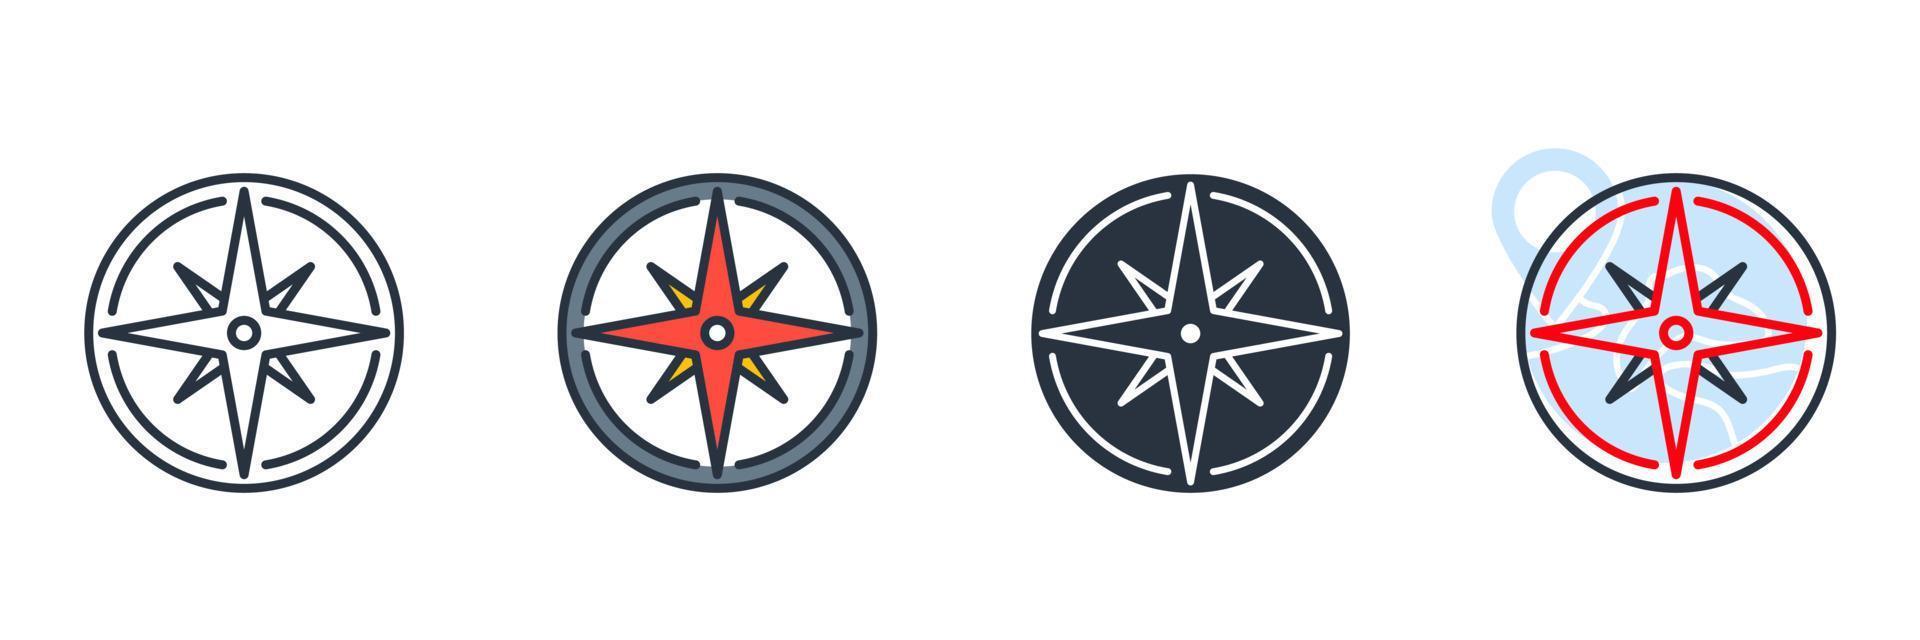 illustrazione vettoriale del logo dell'icona della rosa dei venti. modello di simbolo della bussola per la raccolta di grafica e web design